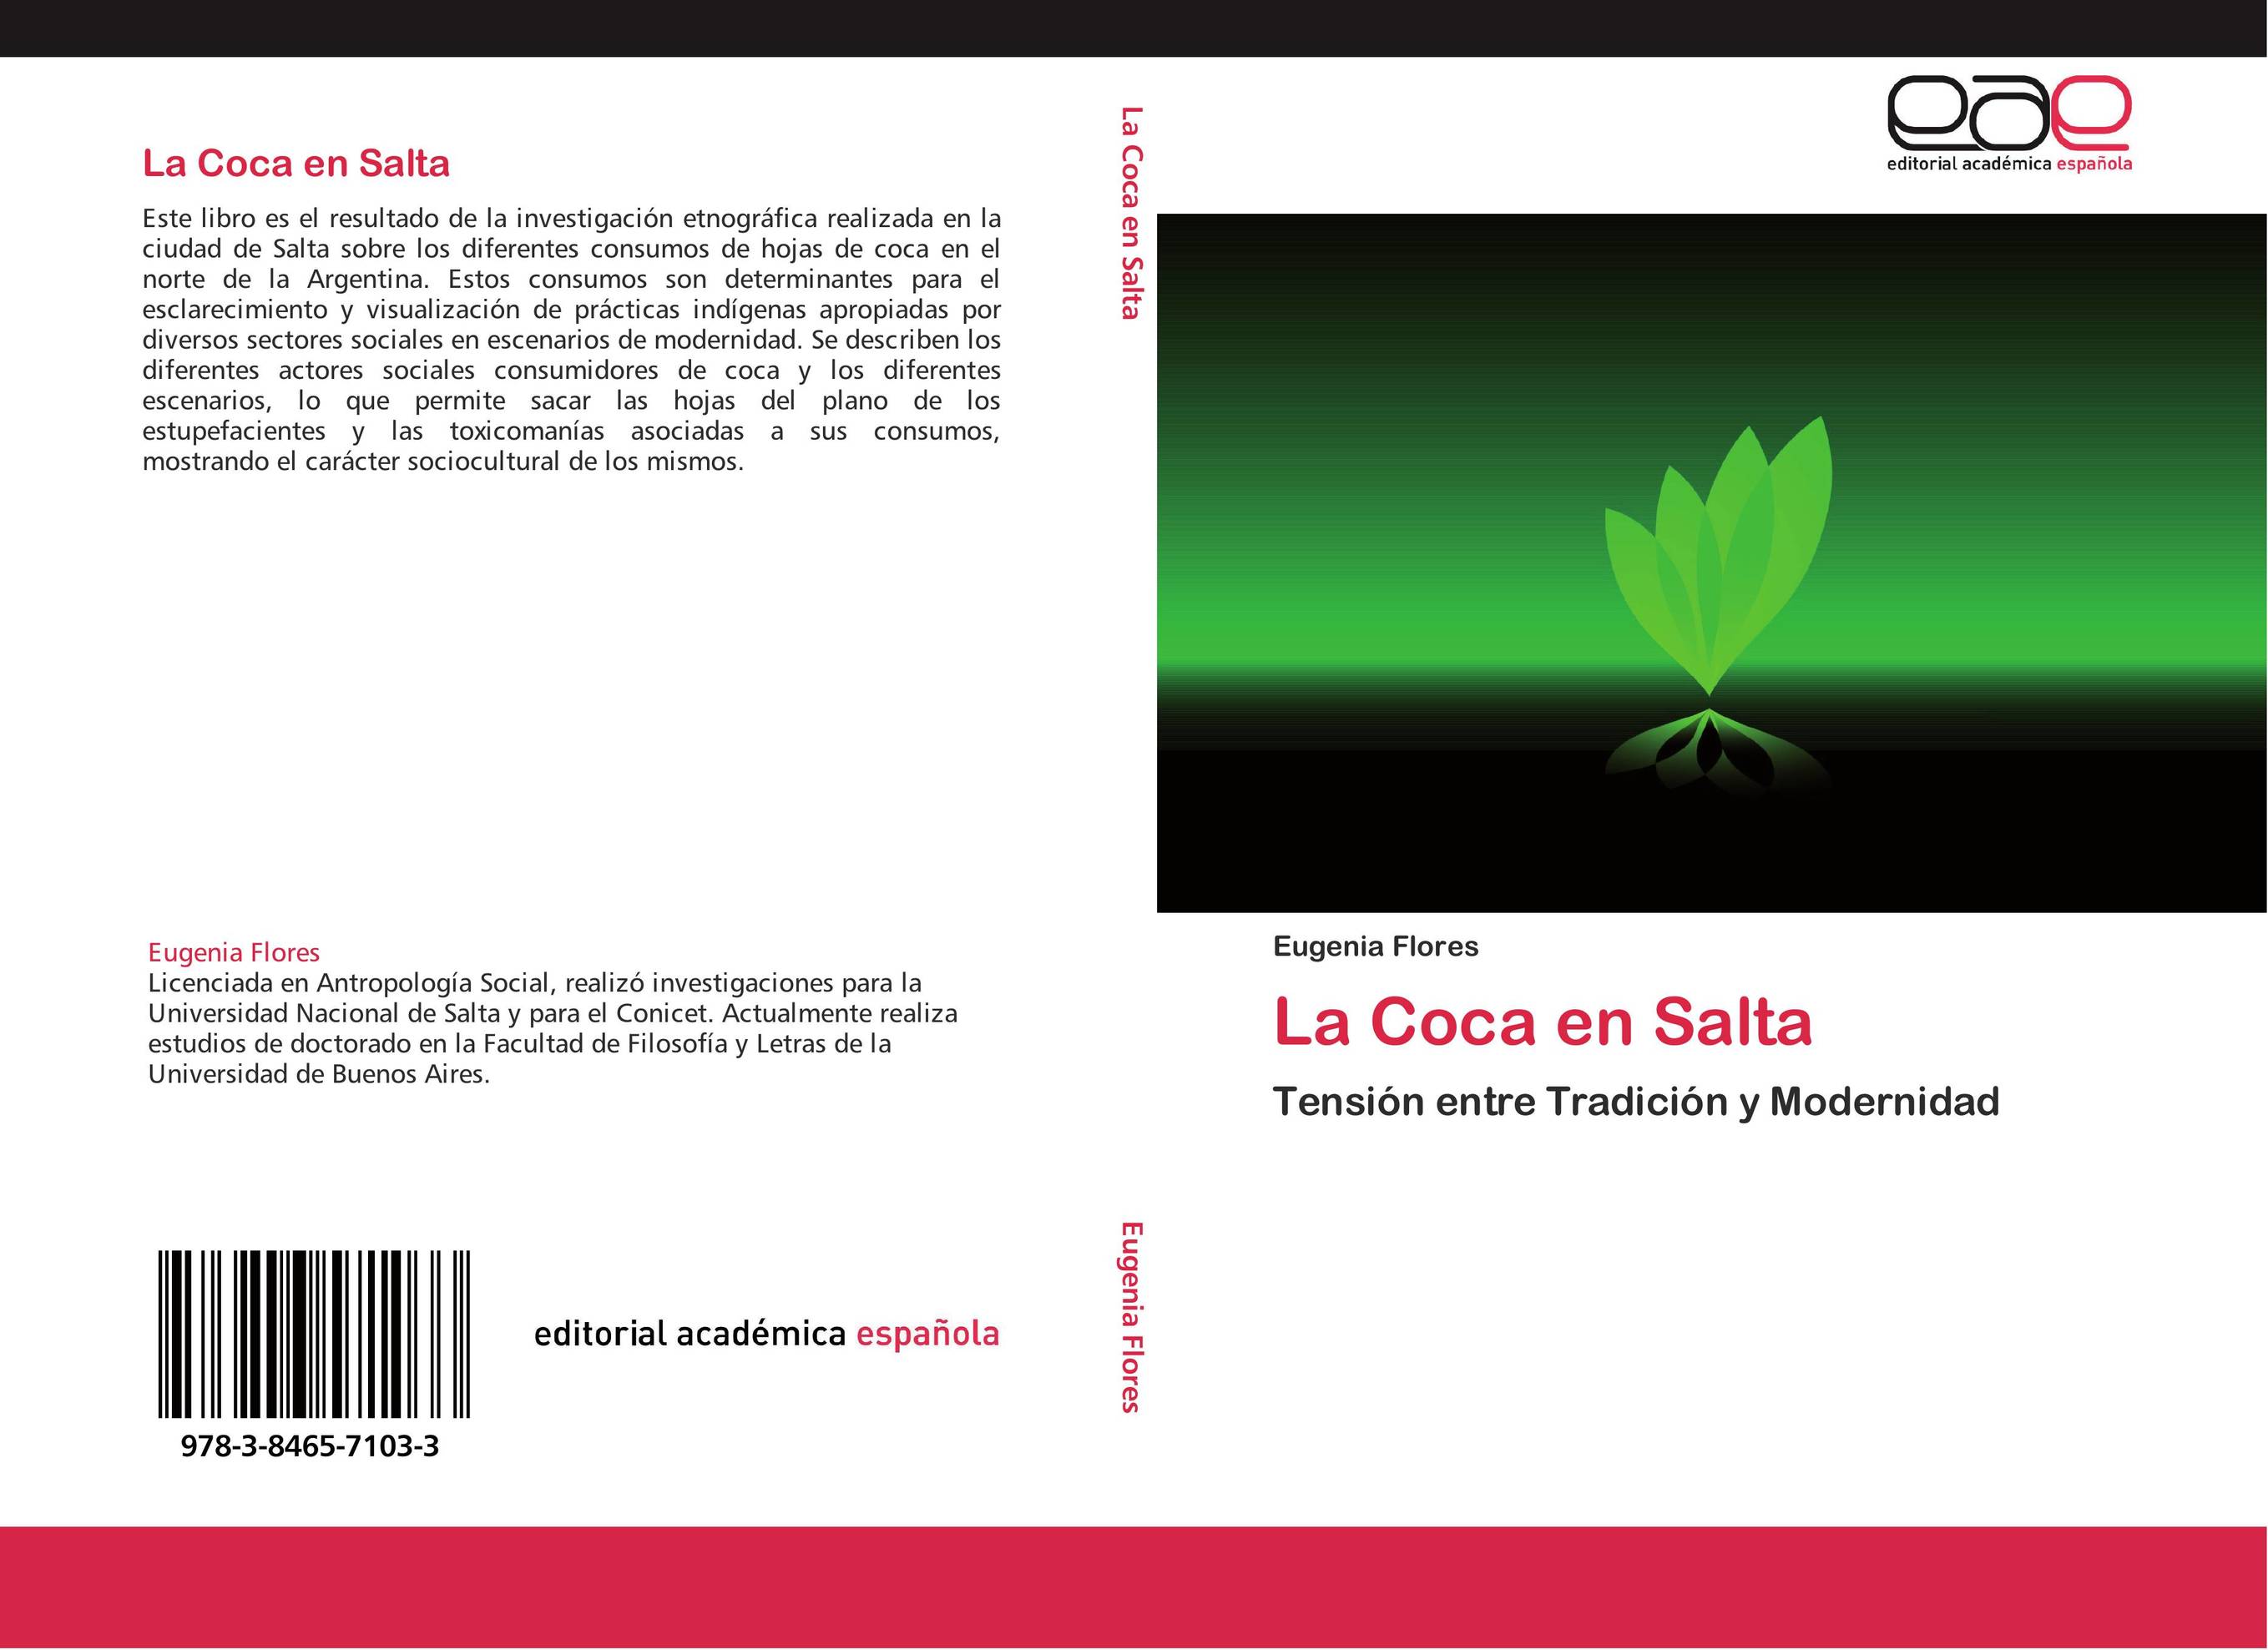 La Coca en Salta